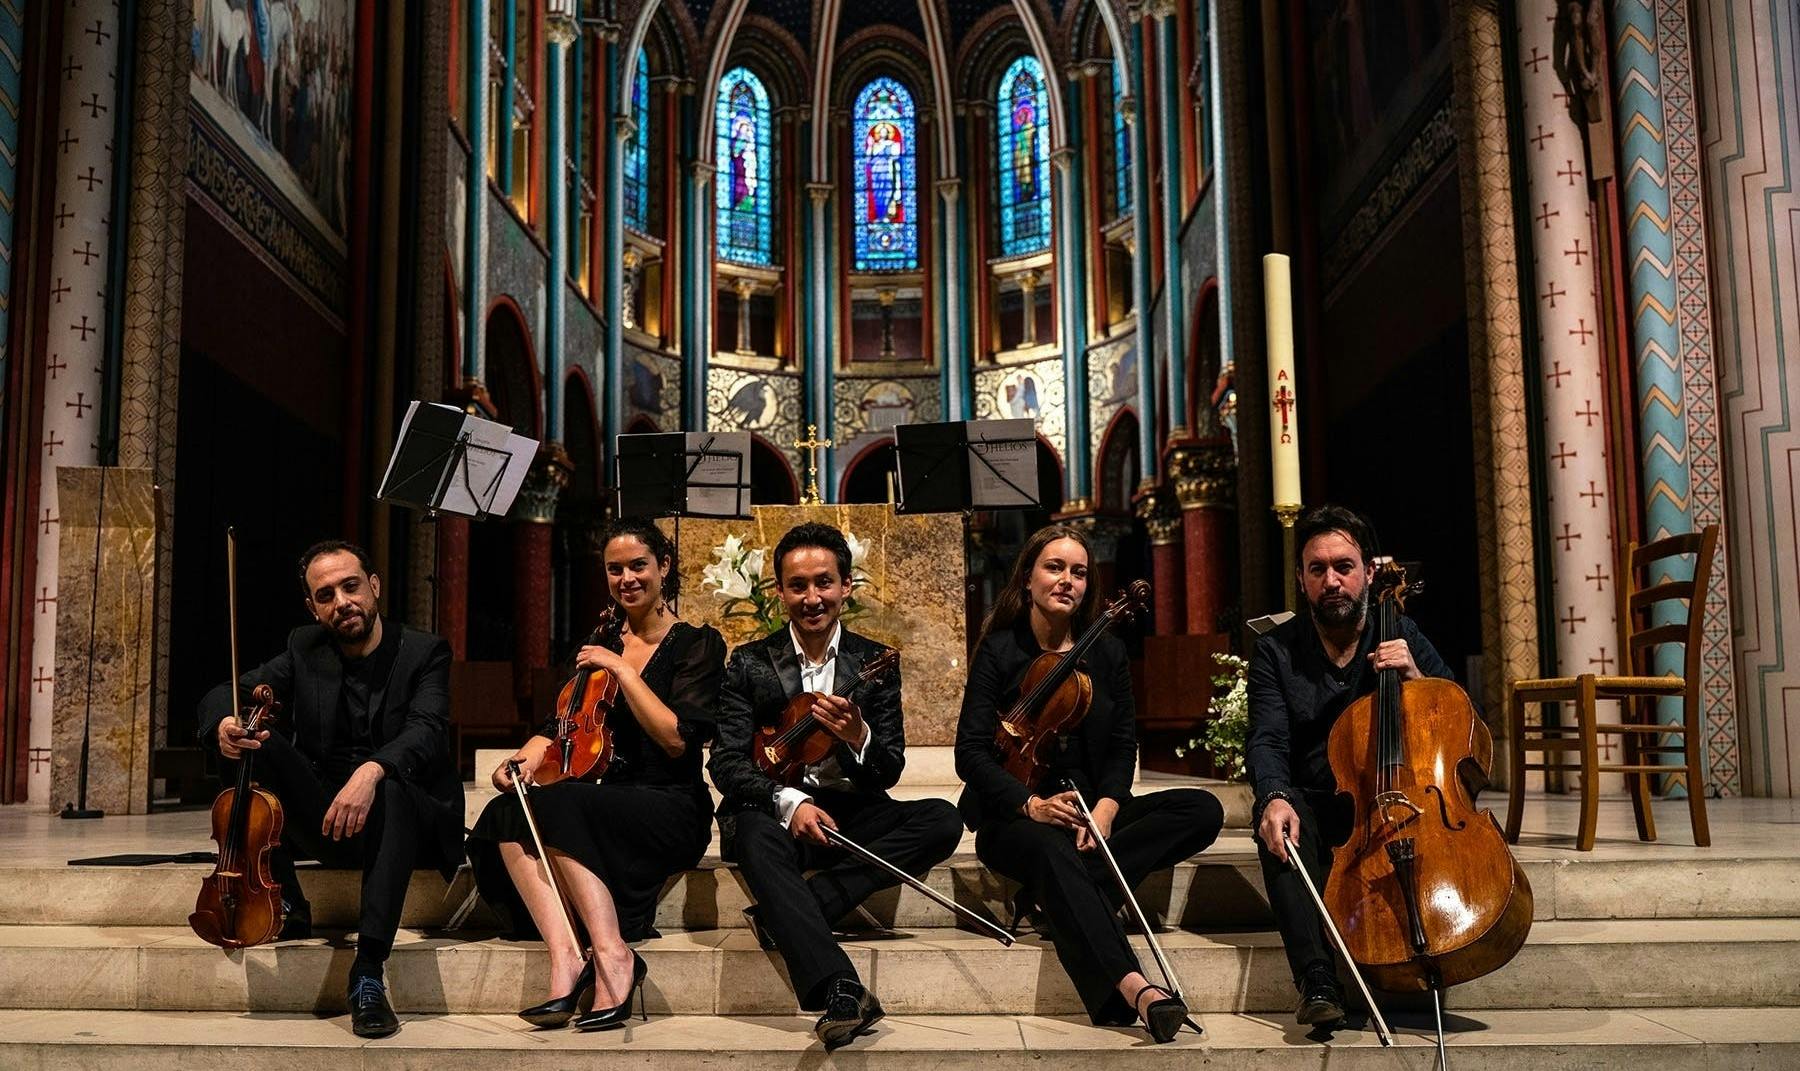 Kaartjes voor klassieke concerten in de kerk Saint-Germain-des-Prés